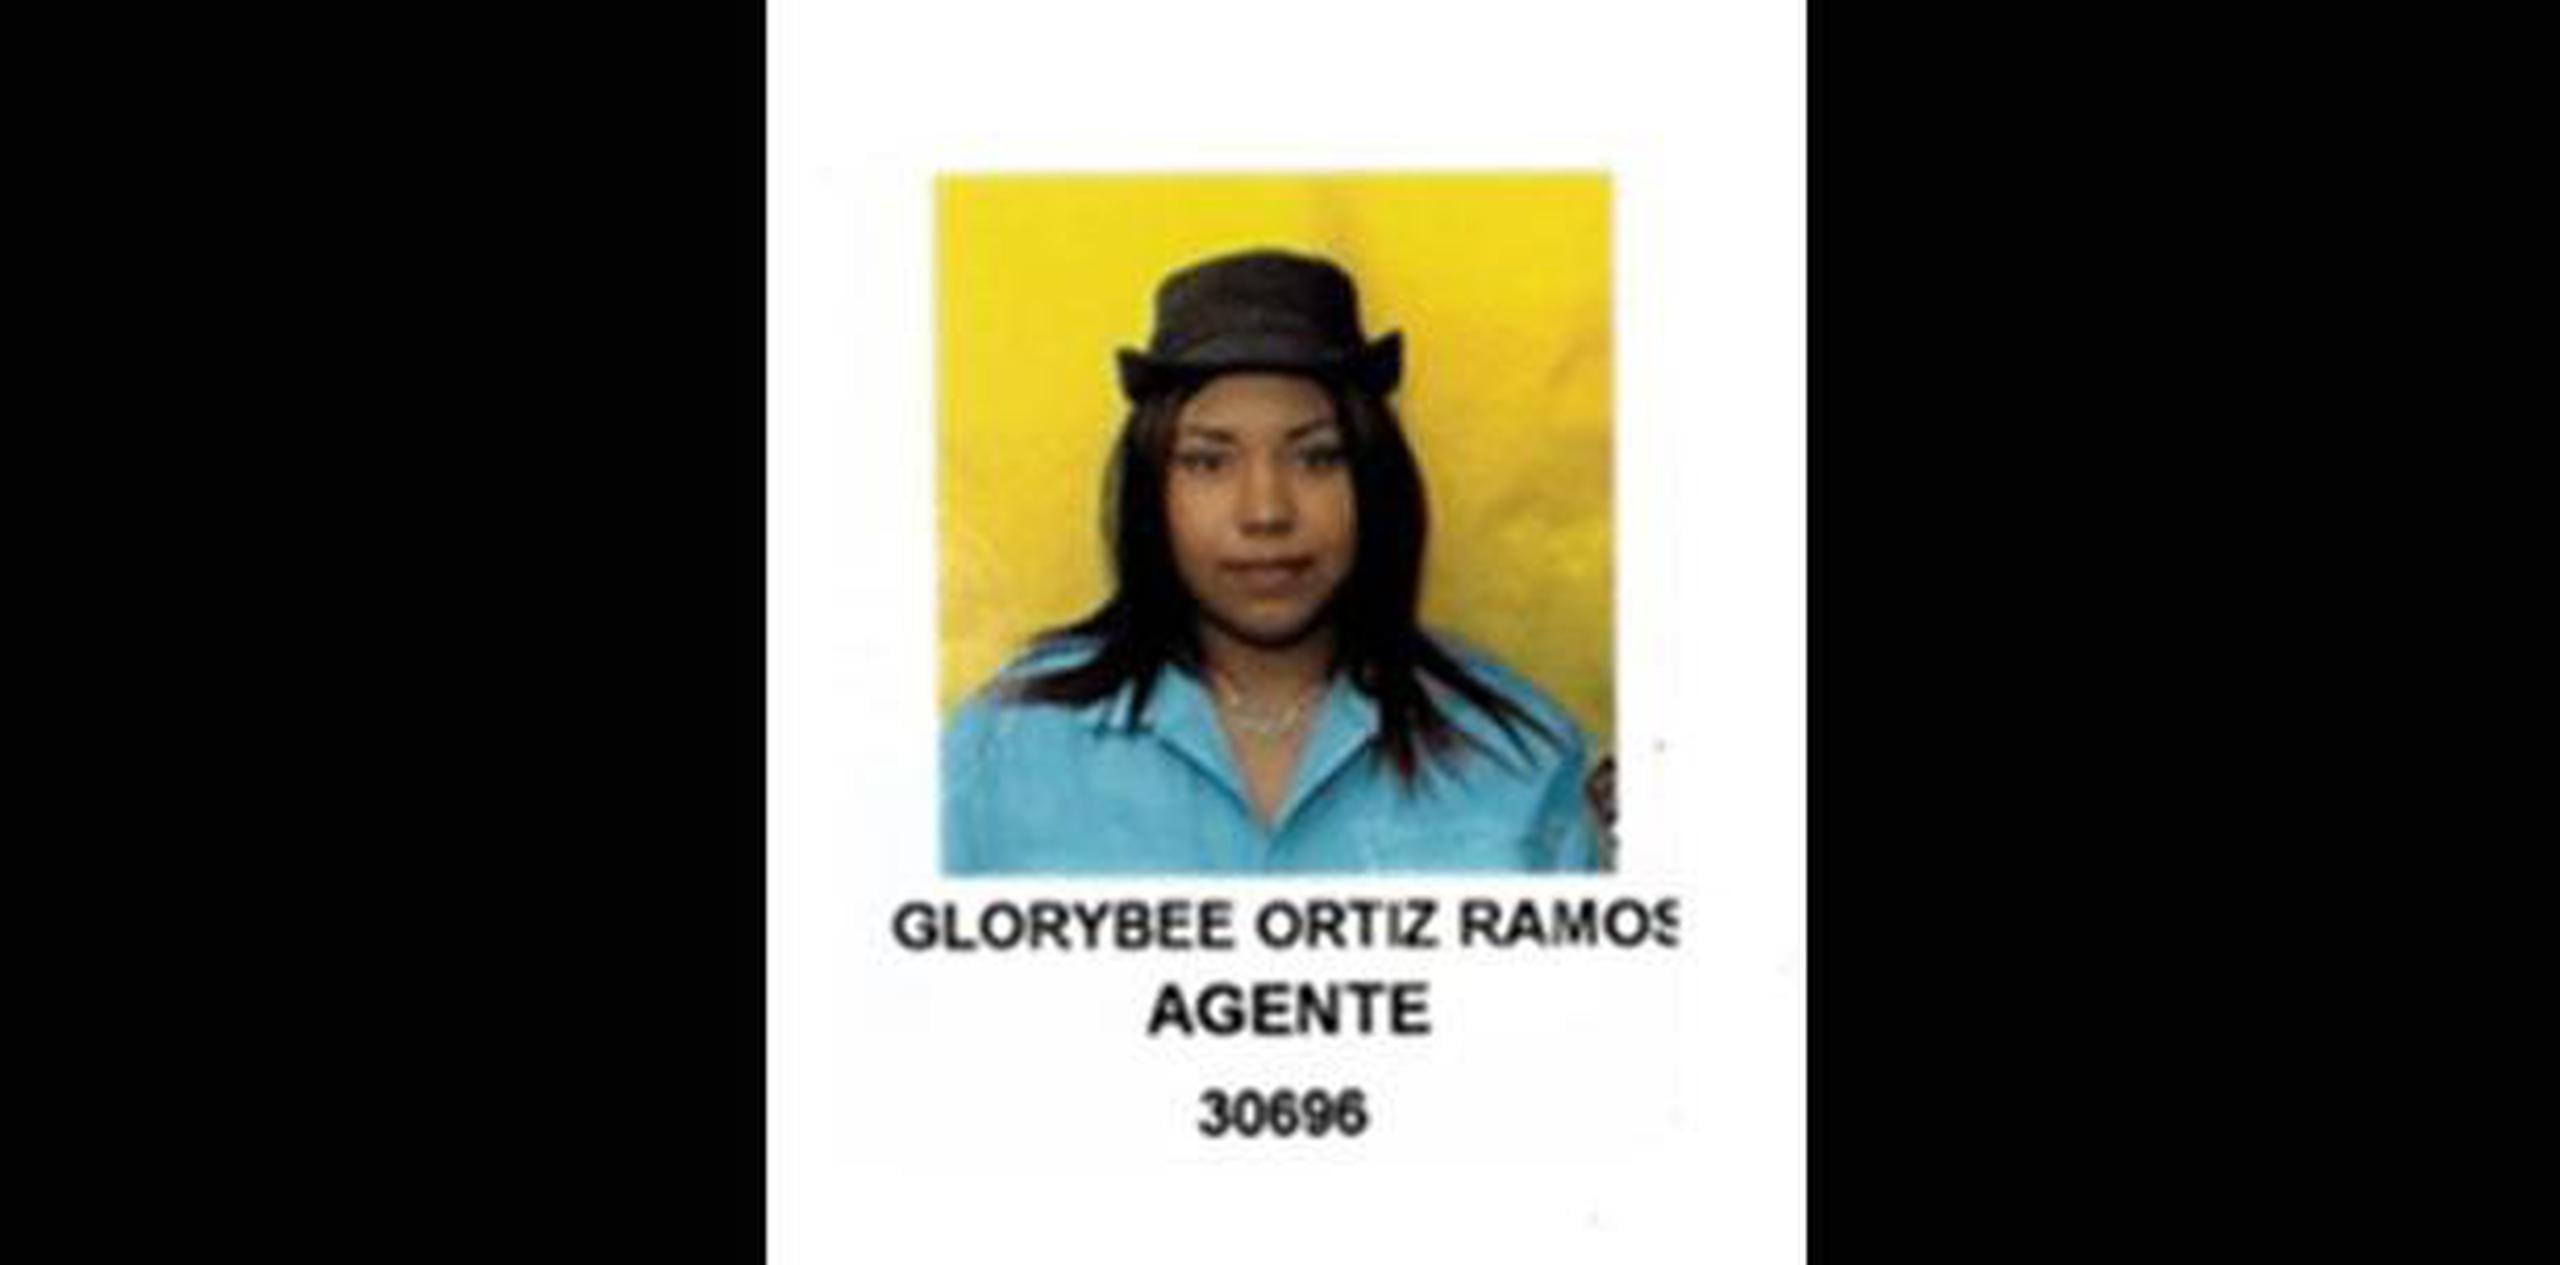 Glorybee Ortiz Ramos fue asesinada por su pareja el domingo por la noche. (Suministrada)